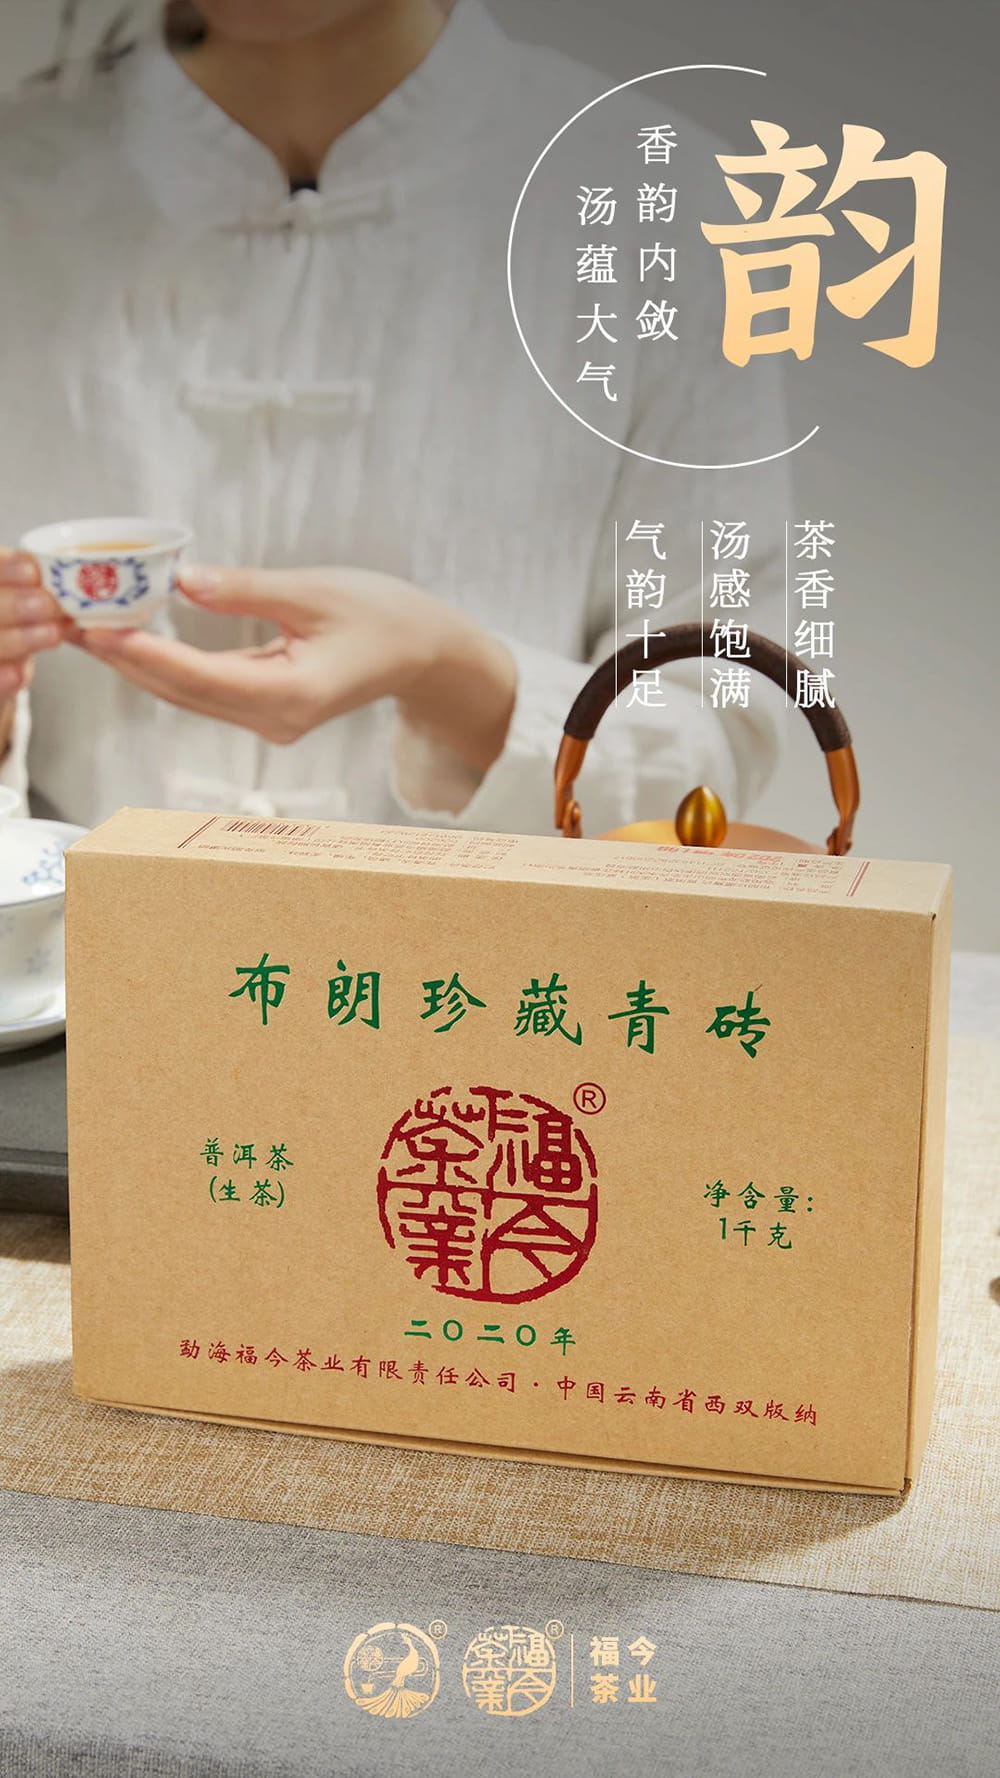 布朗系列丨福今茶业2020年『布朗珍藏青砖』即将正式发售！